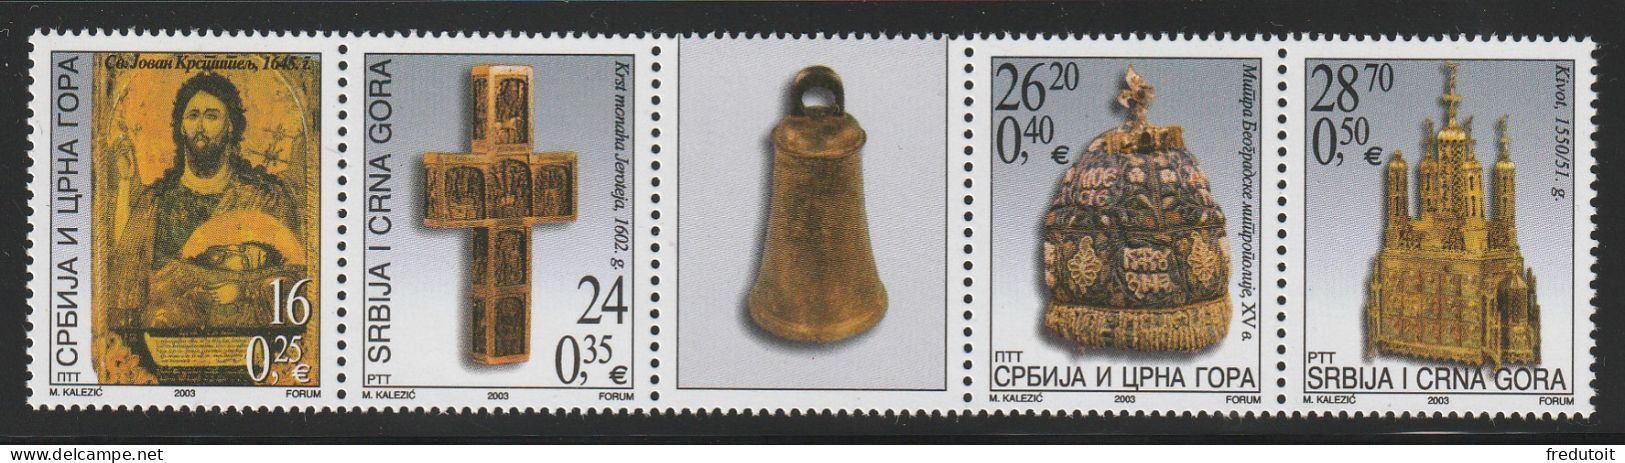 Serbie Et Montenegro - N°2998/3001 ** (2003) Pièces Du Musée De L'église Orthodoxe Serbe. - Serbien